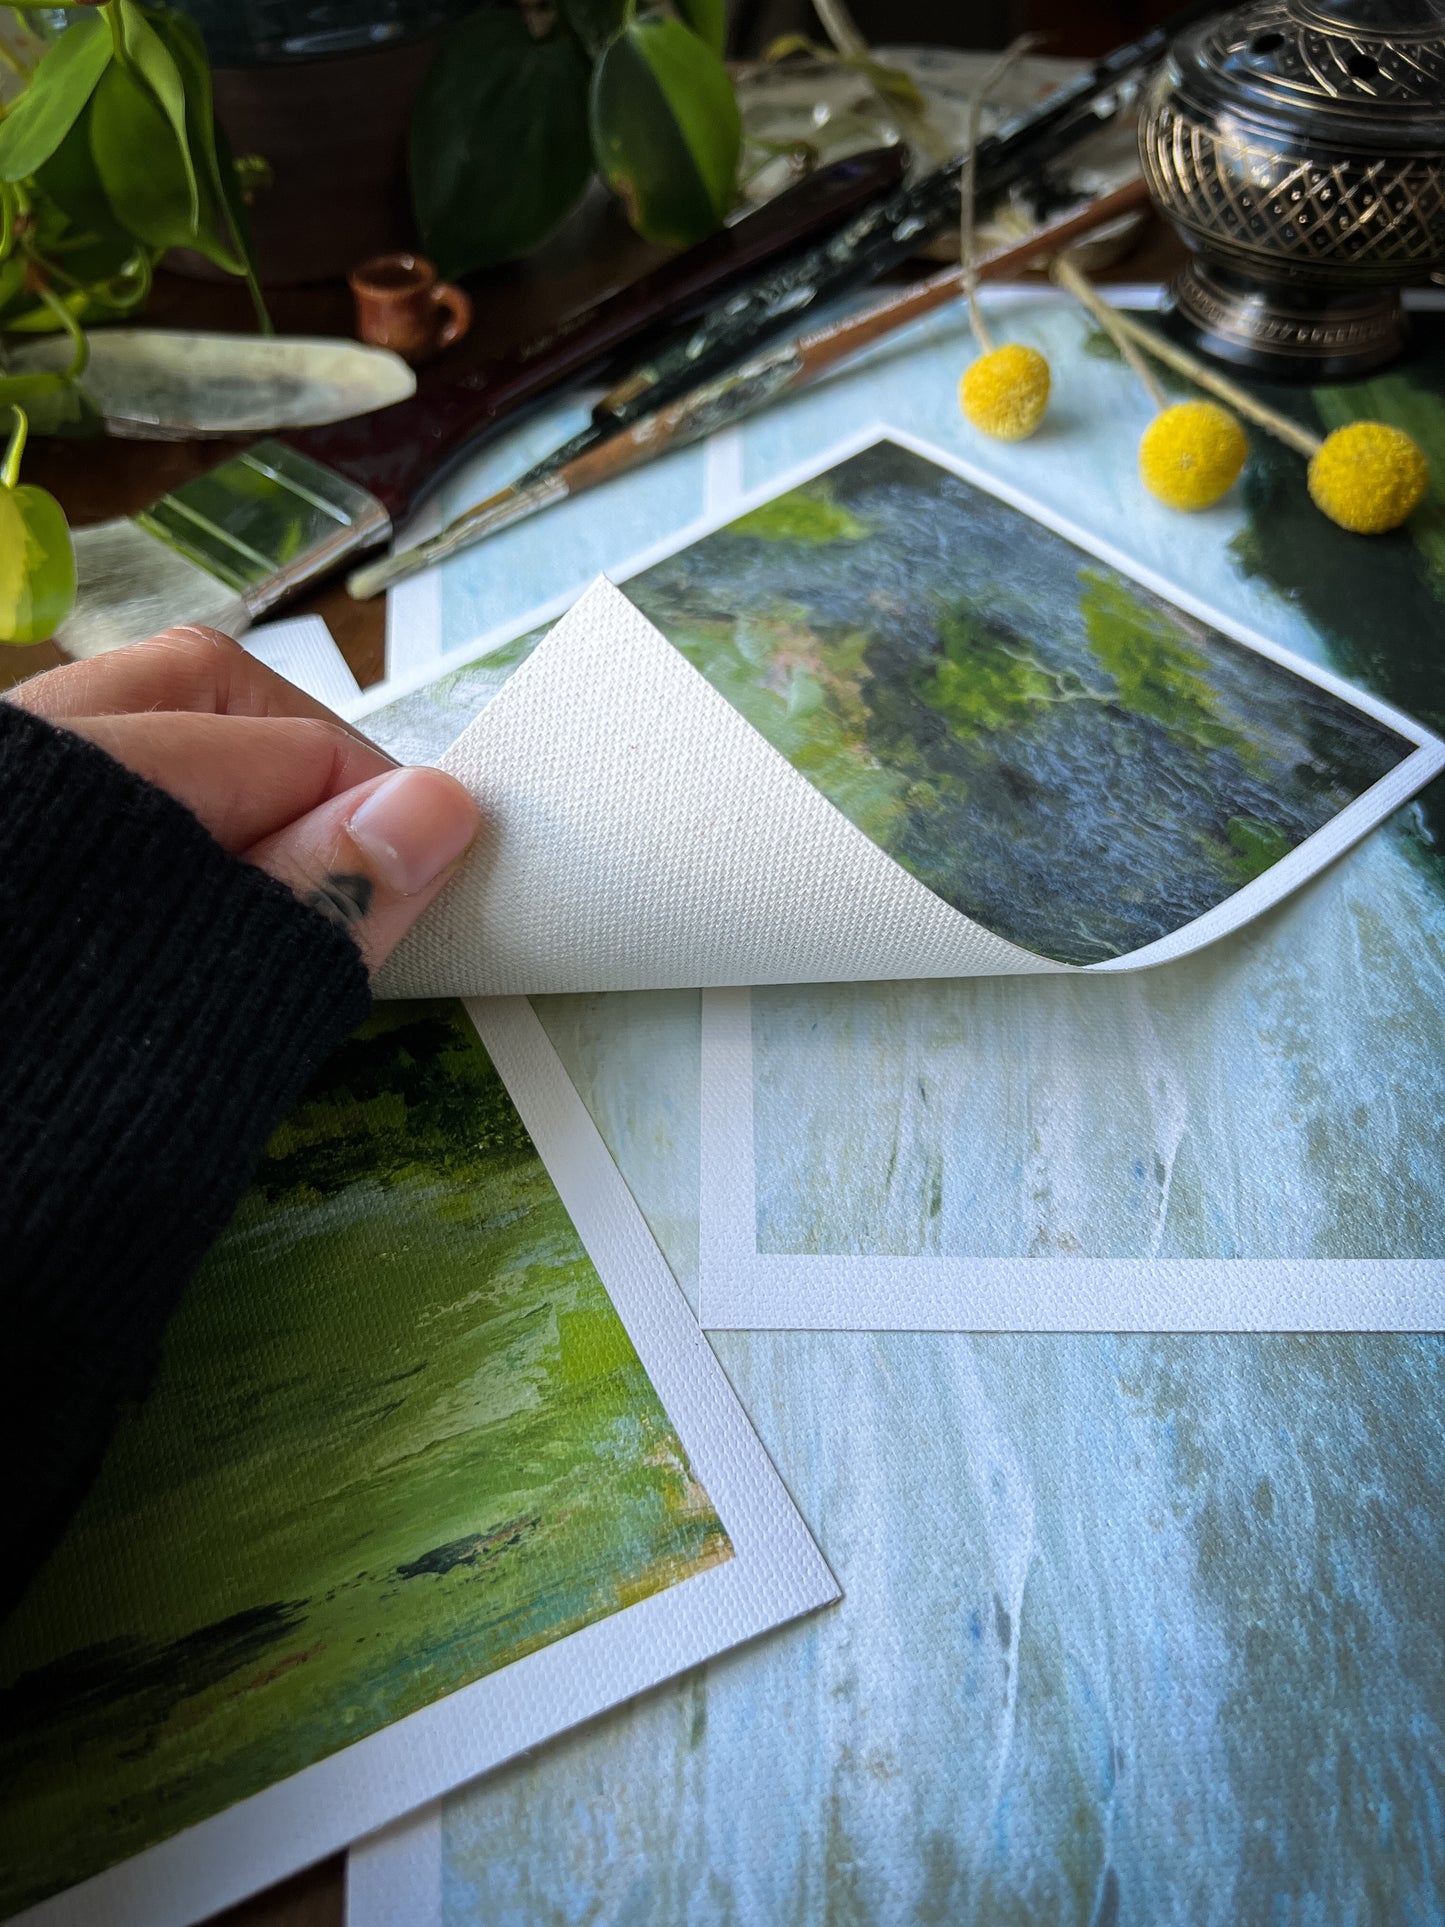 hand holding landscape archival giclée matte canvas print to show fibers underneath canvas